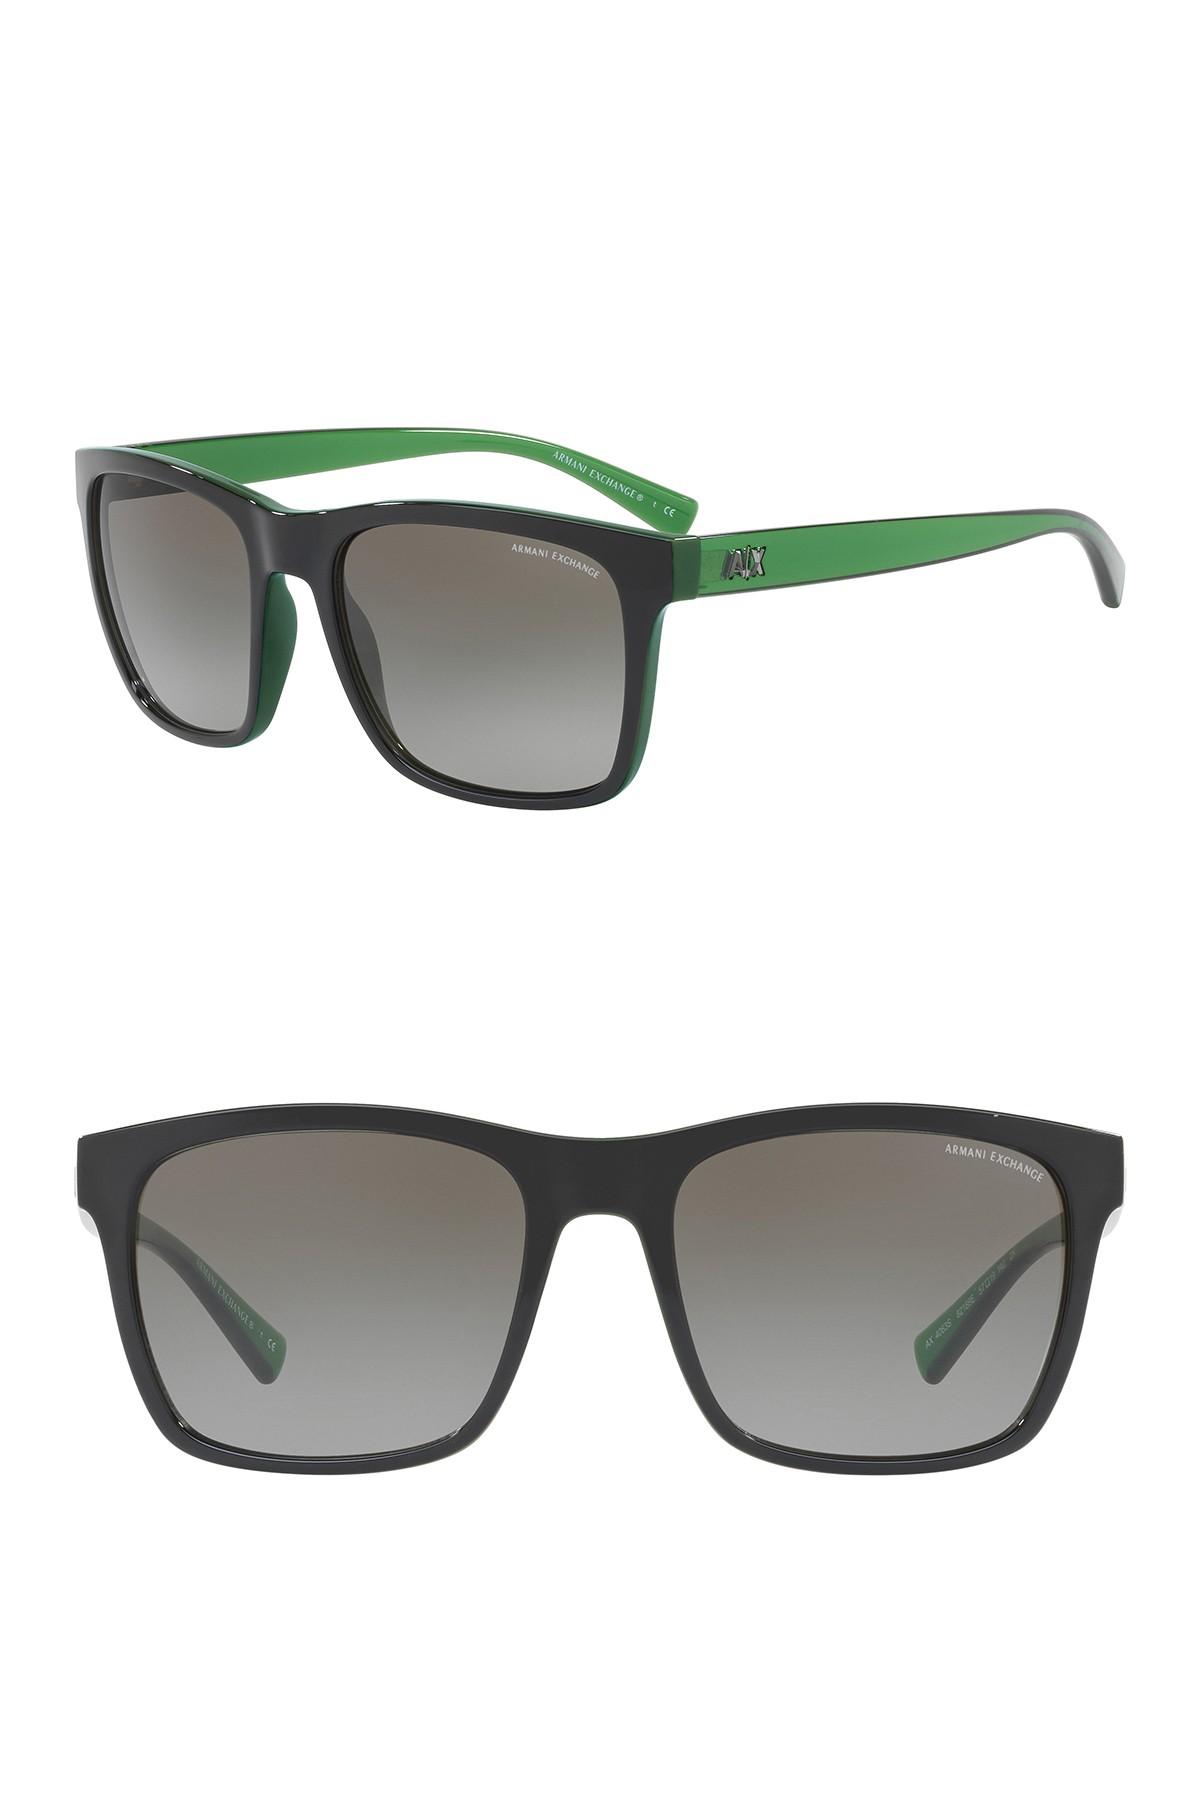 armani sunglasses green